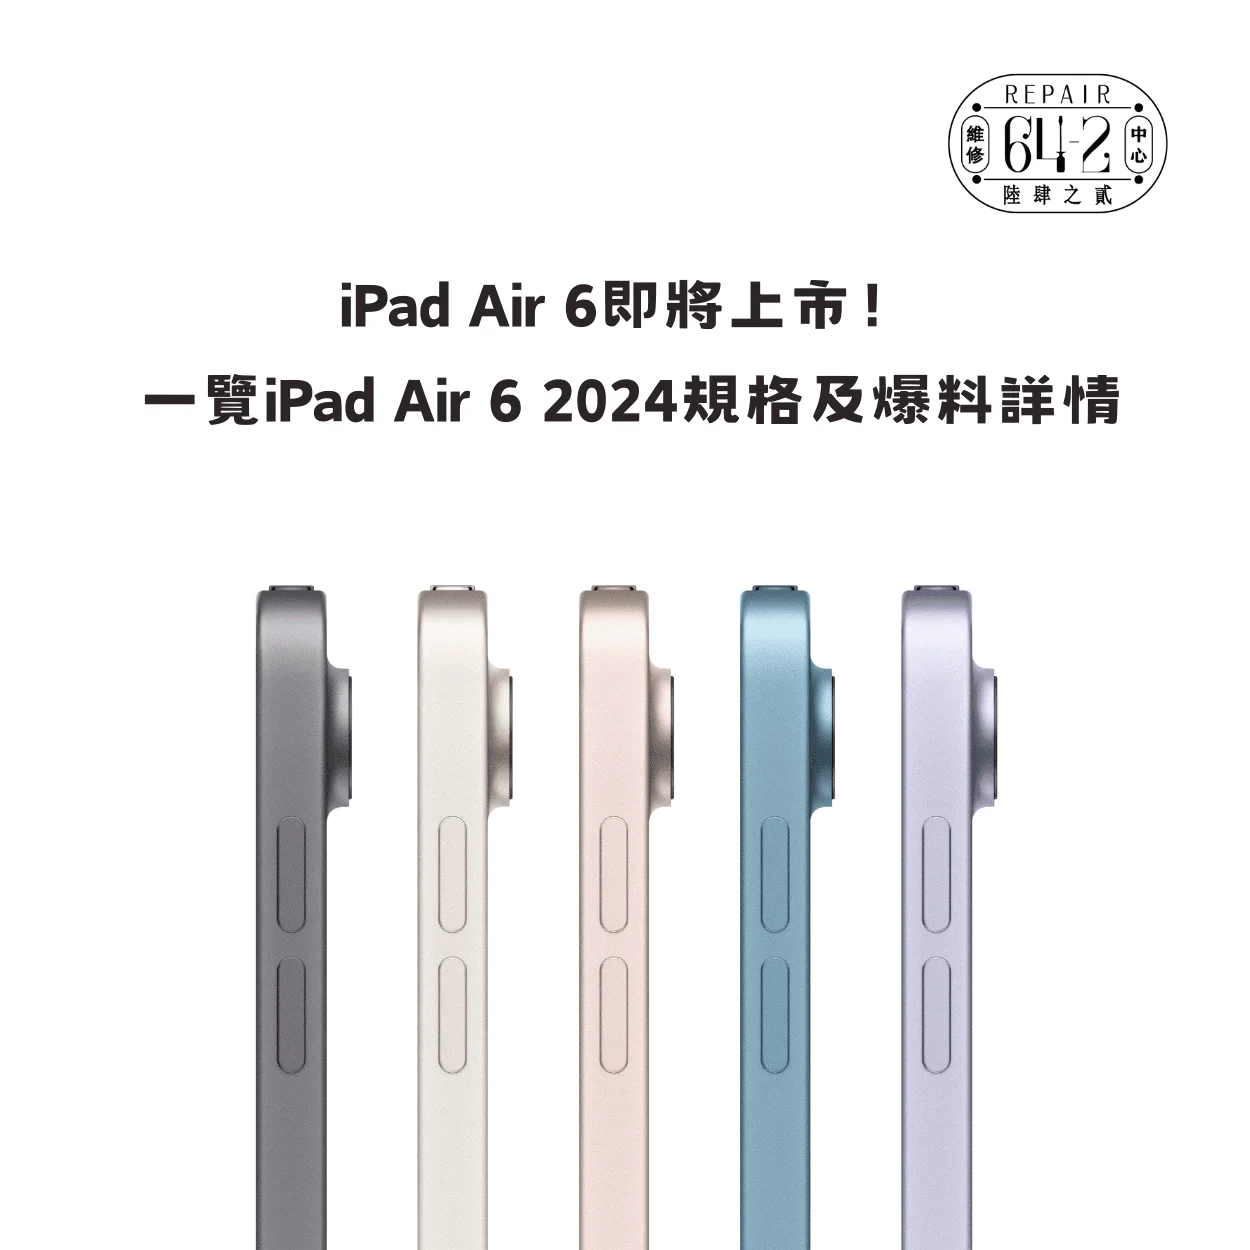 iPad Air 6上市懶人包